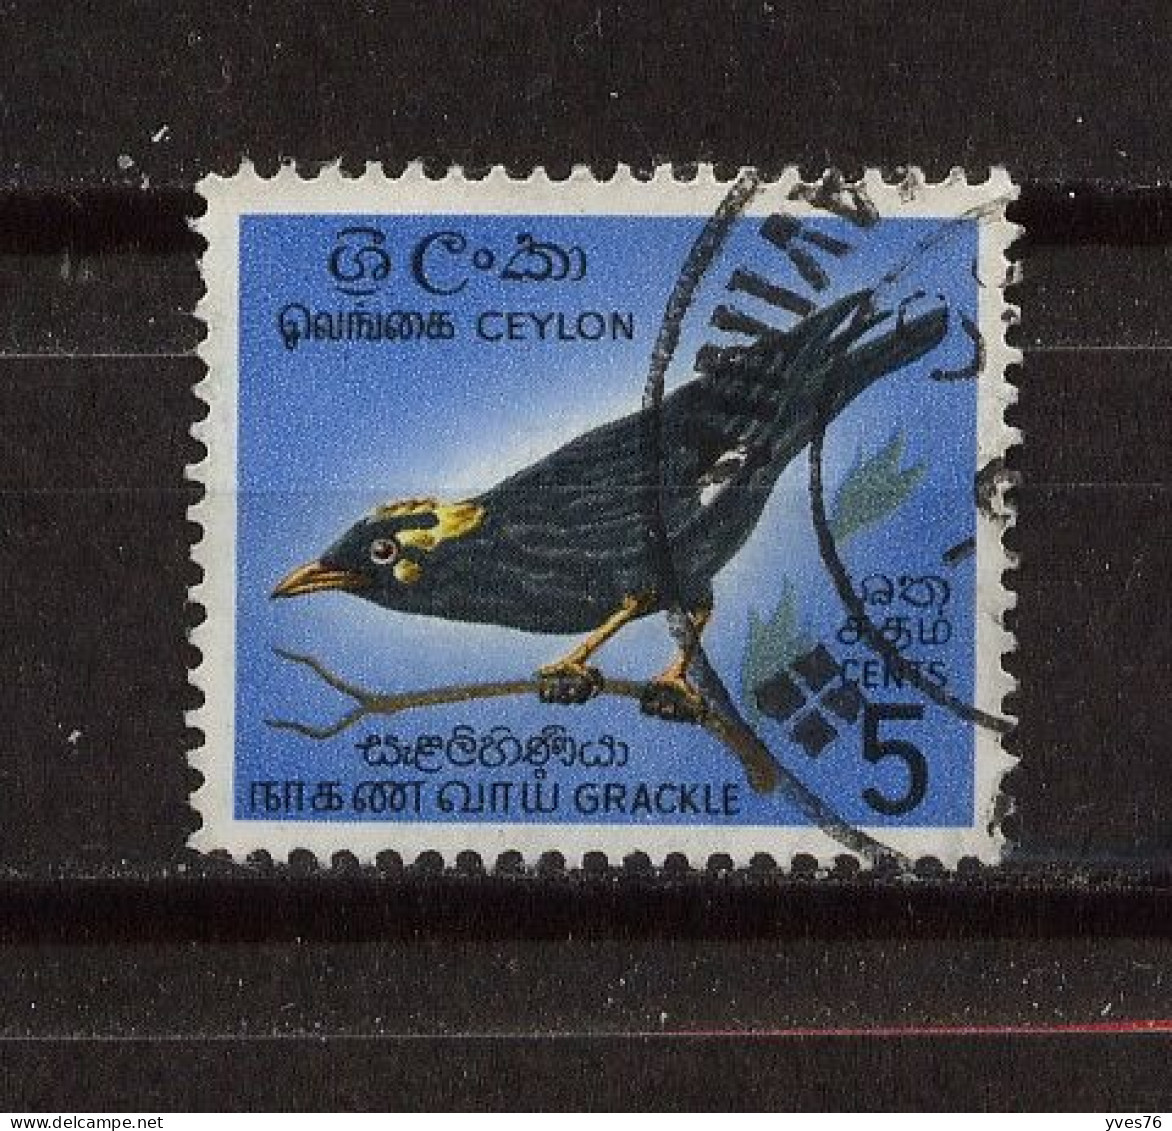 CEYLAN - SRI LANKA - Y&T N° 358° - Oiseau - Merle - Sri Lanka (Ceylan) (1948-...)